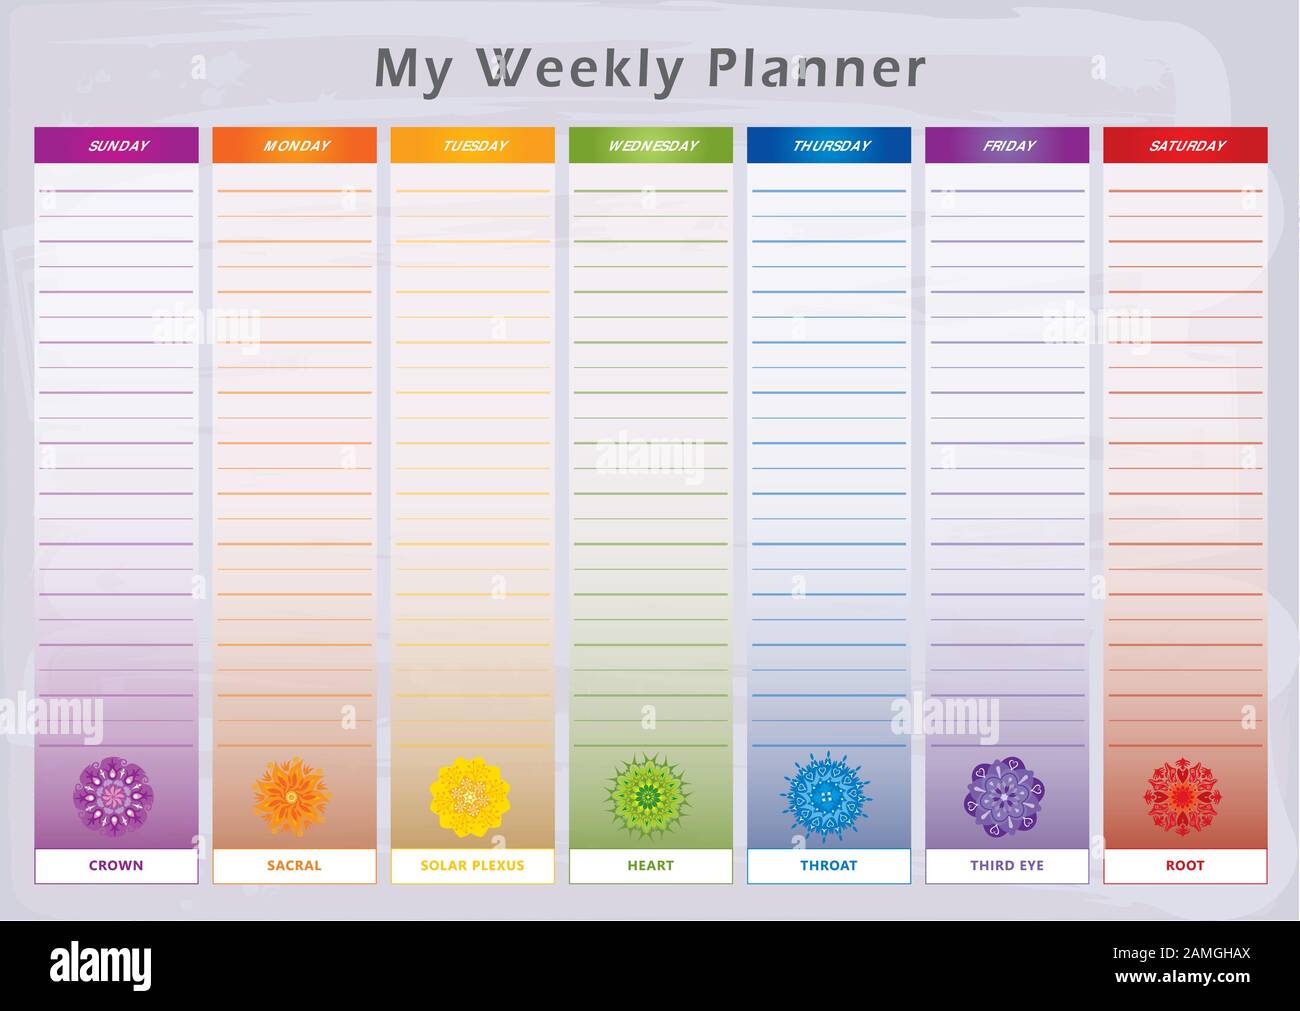 Weekly Planner mit 7 Tagen und entsprechenden Chakras in Rainbow Colors - English Language Stock Vektor